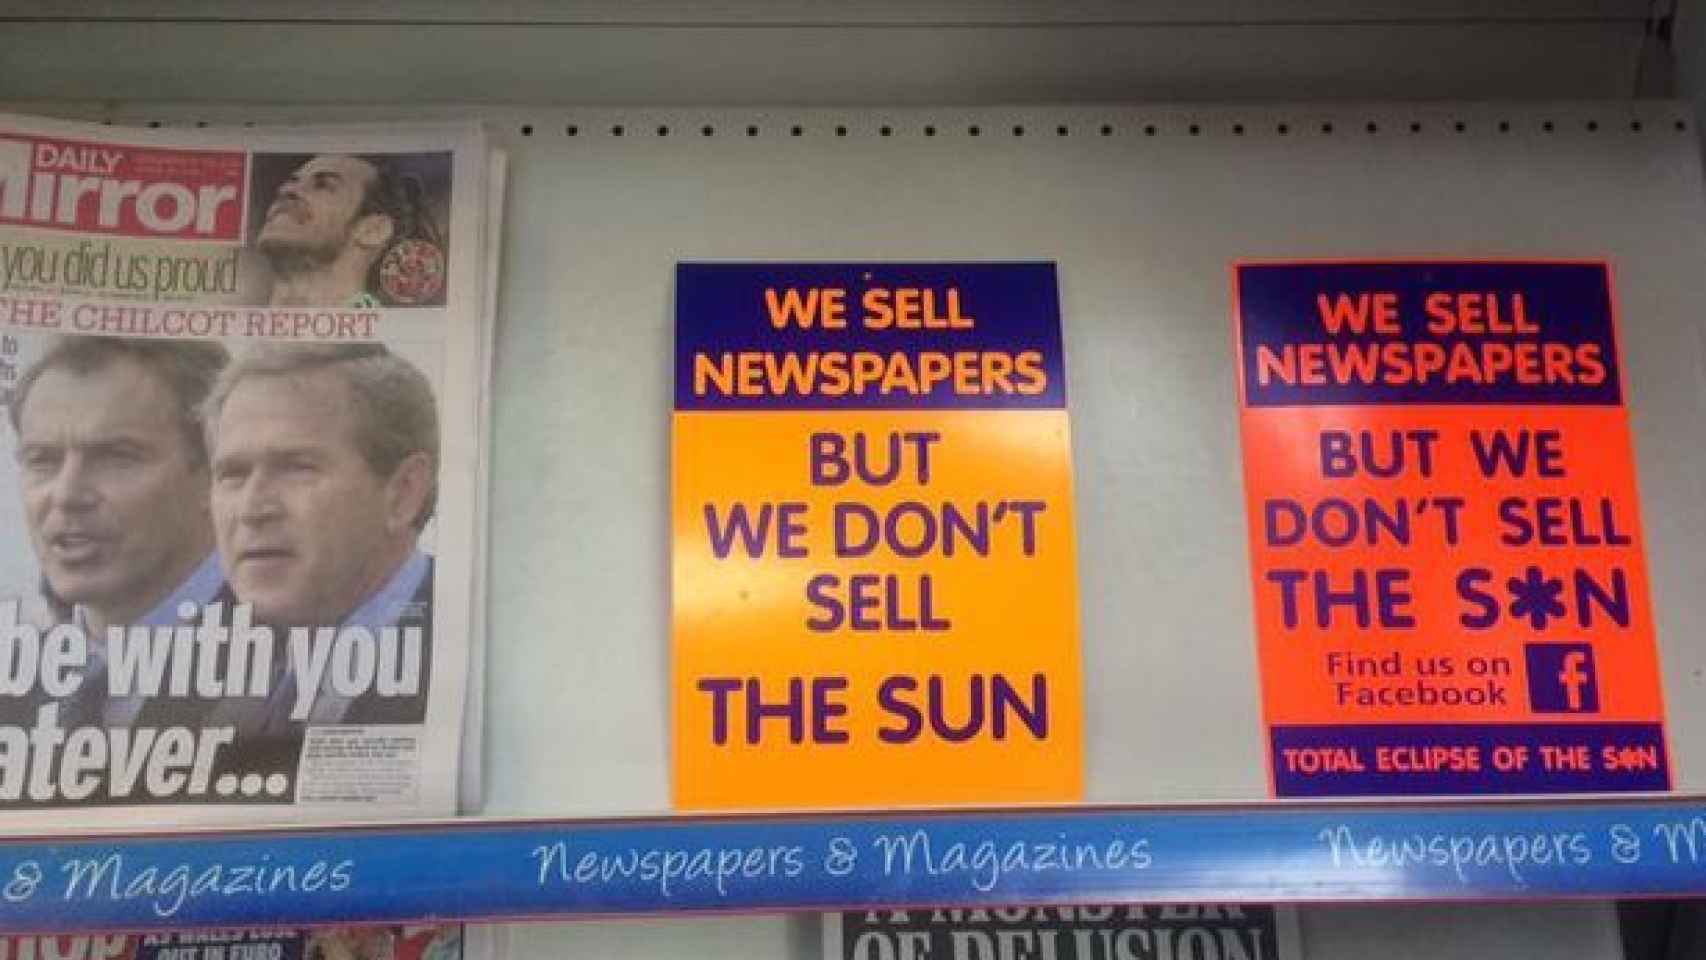 Vendemos periódicos, no vendemos The Sun